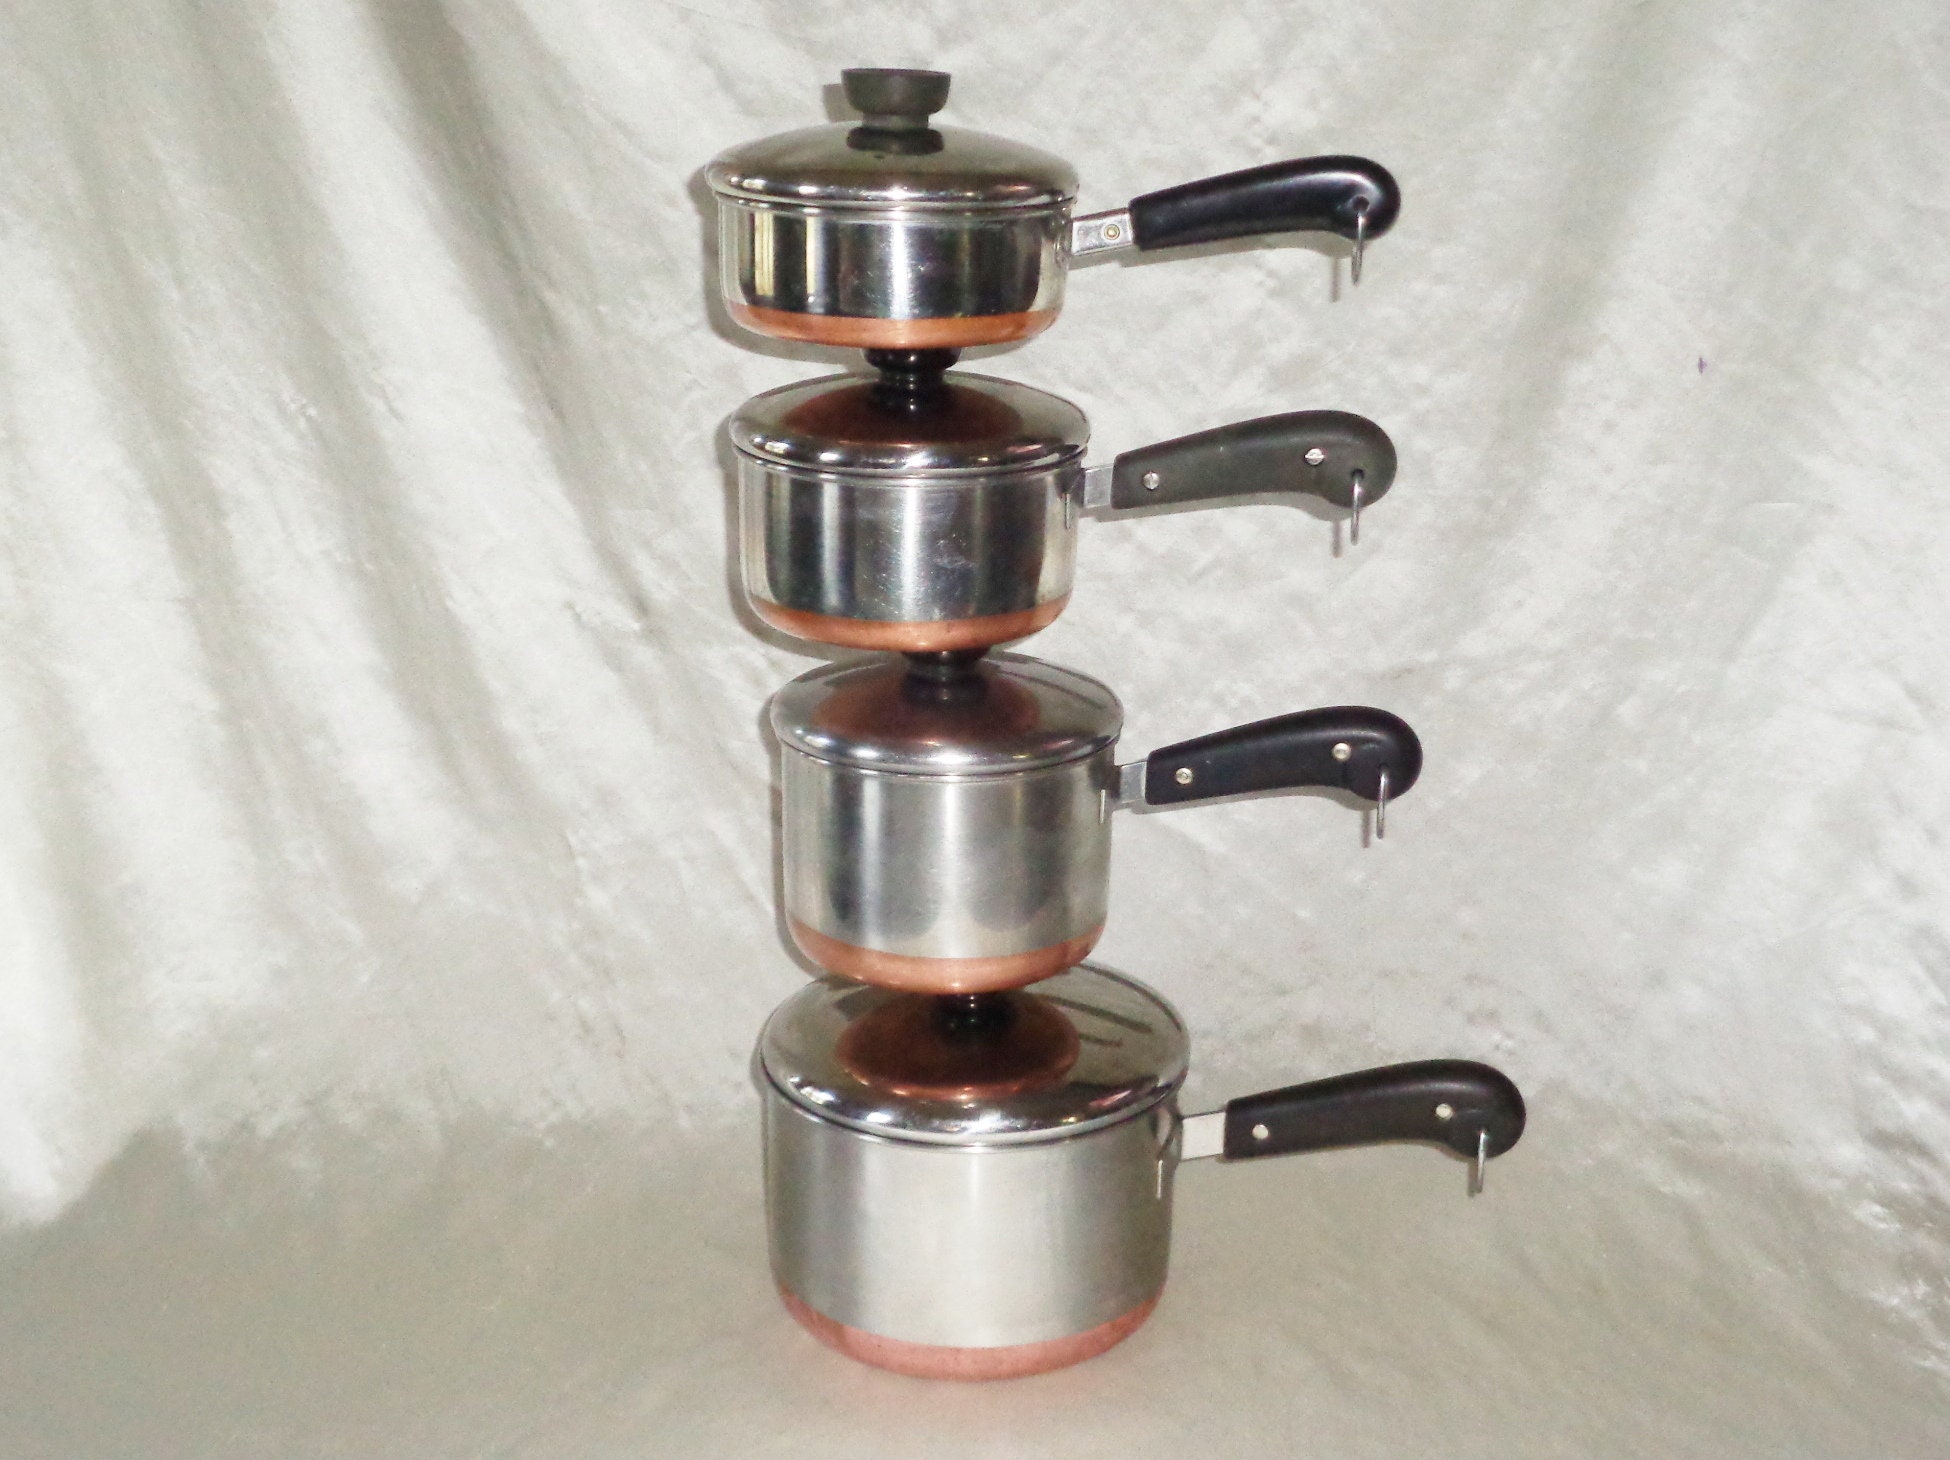 Vintage LOT 4 of Revere Ware Pots with Lids - Some Copper Clad- 1 2 Quart  Pots